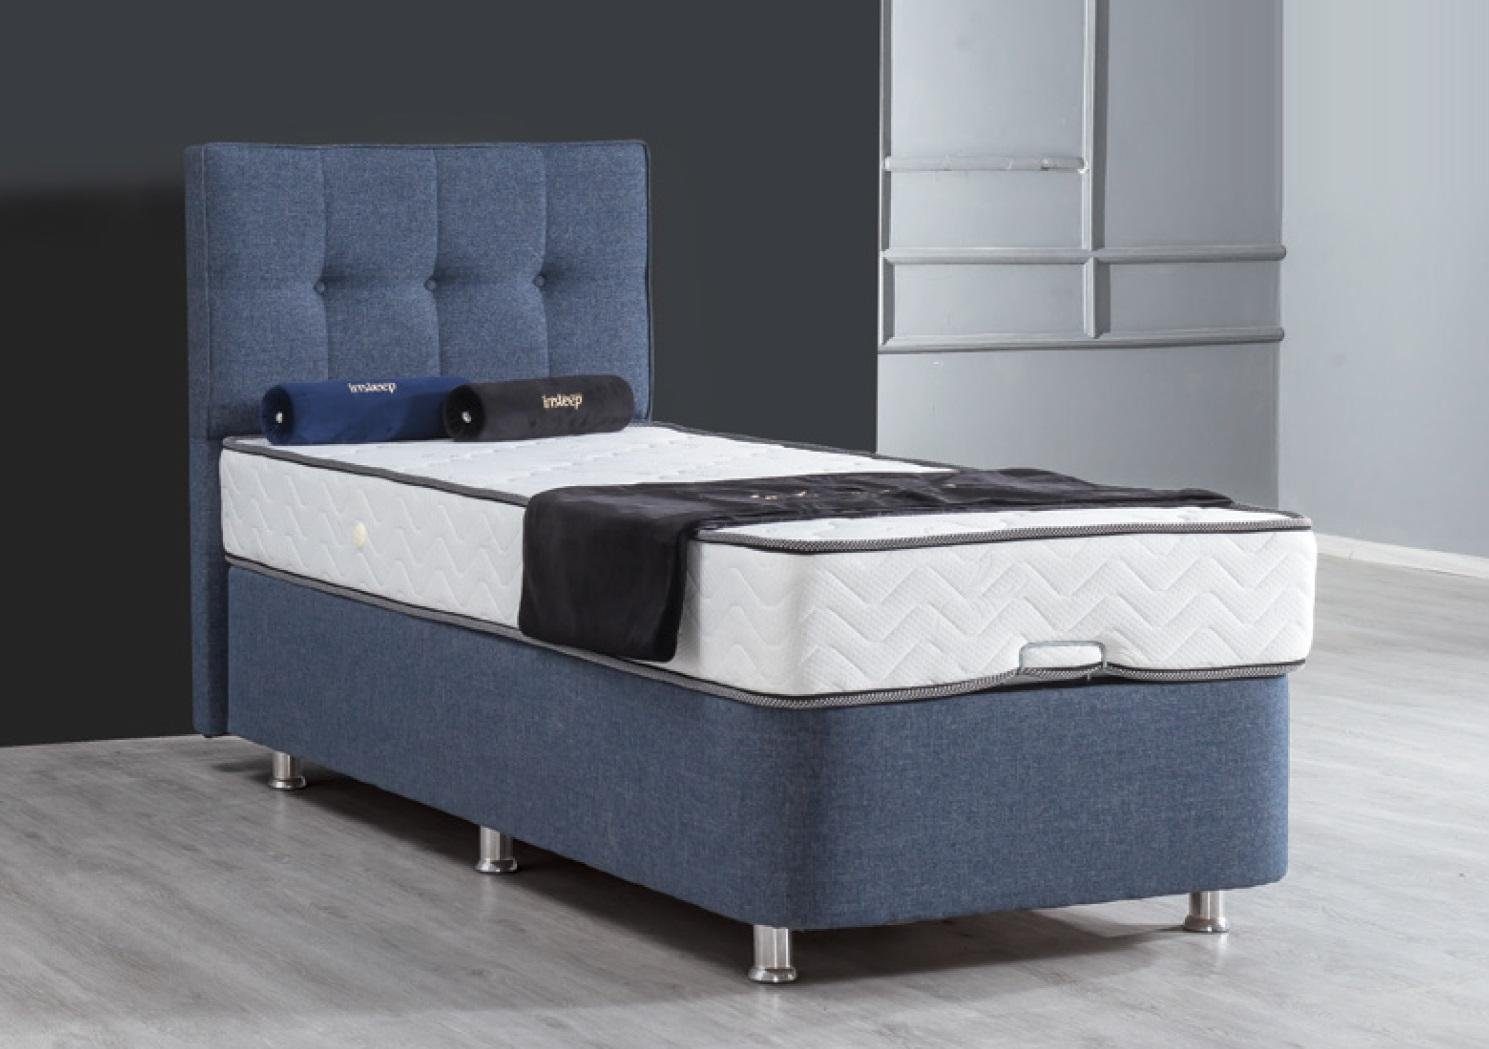 Stoff Einzelbett Betten Bett JVmoebel Luxus Blau Modern Metall Bett Bett